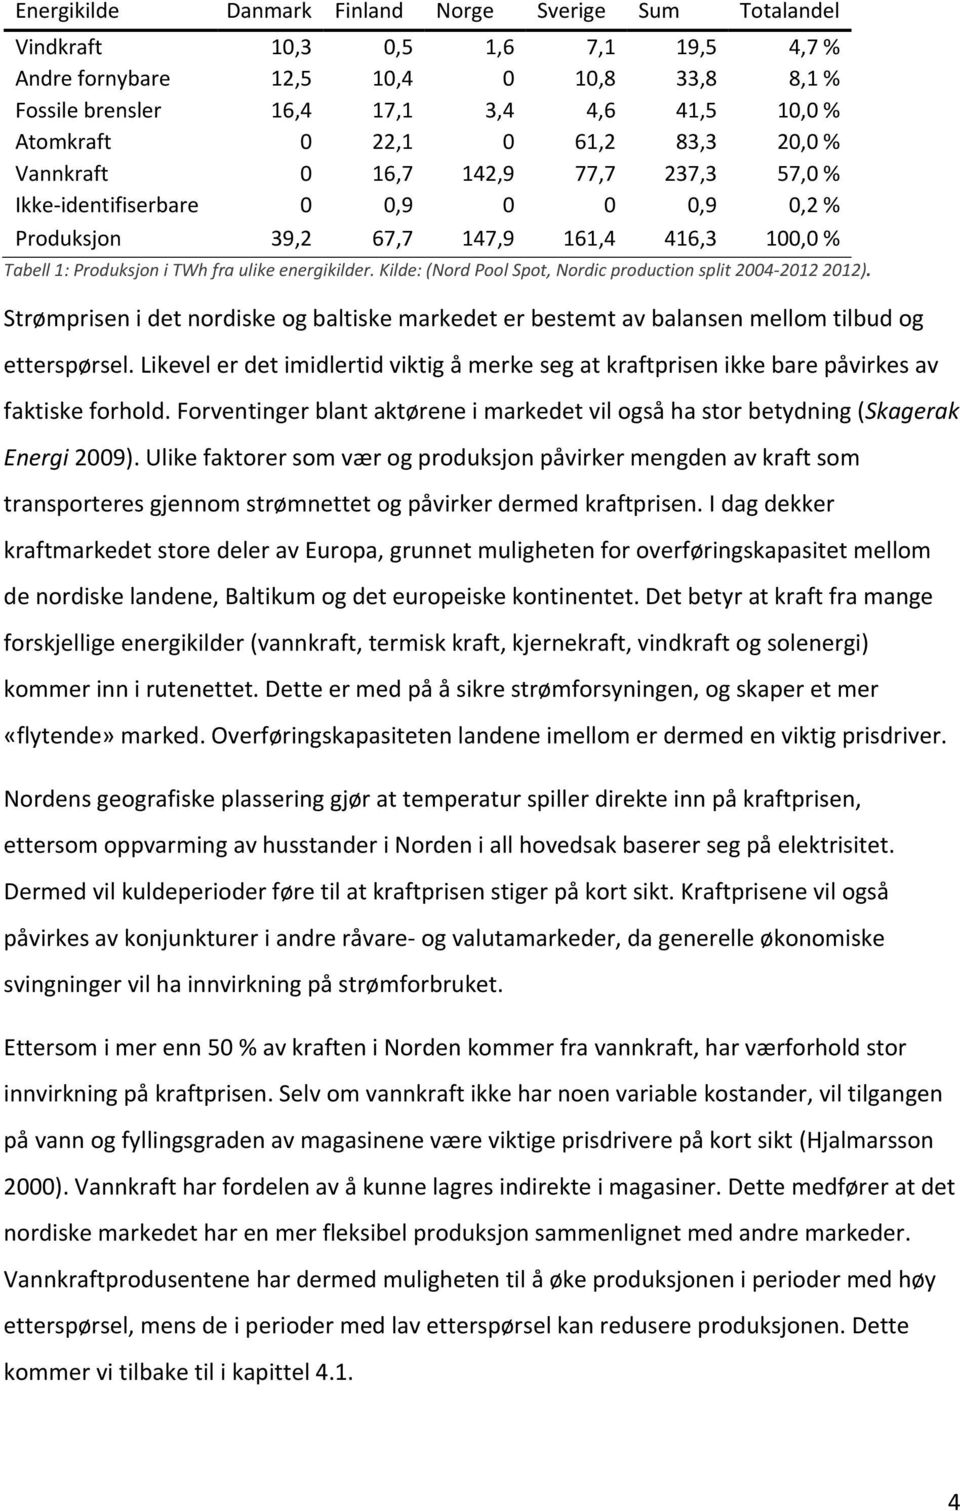 energikilder. Kilde: (Nord Pool Spot, Nordic production split 2004-2012 2012). Strømprisen i det nordiske og baltiske markedet er bestemt av balansen mellom tilbud og etterspørsel.